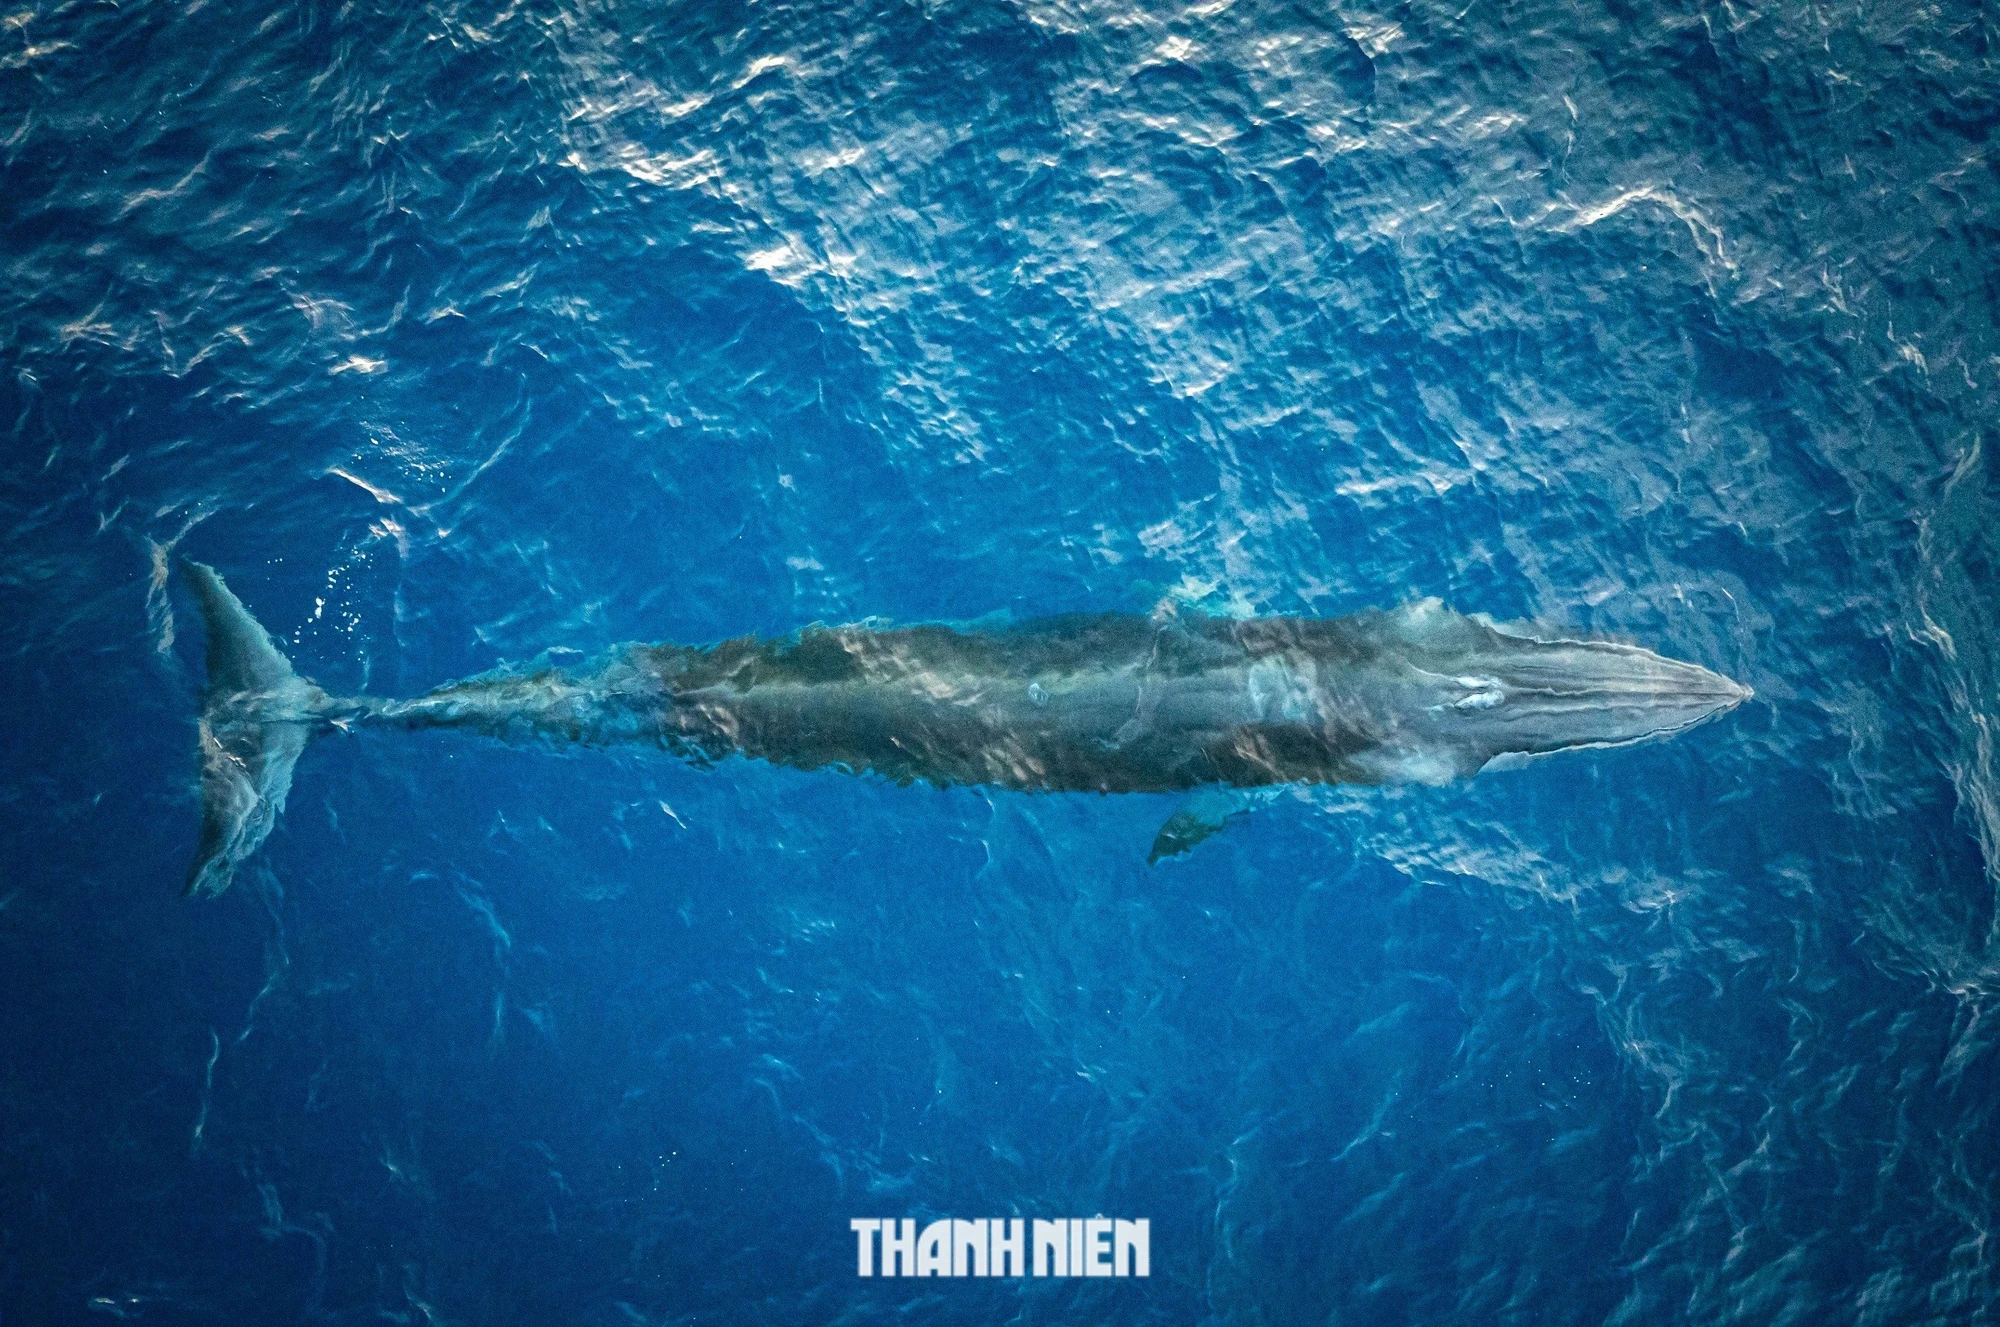 Cận cảnh cá voi dài gần 8 m săn mồi gần bờ biển Bình Định